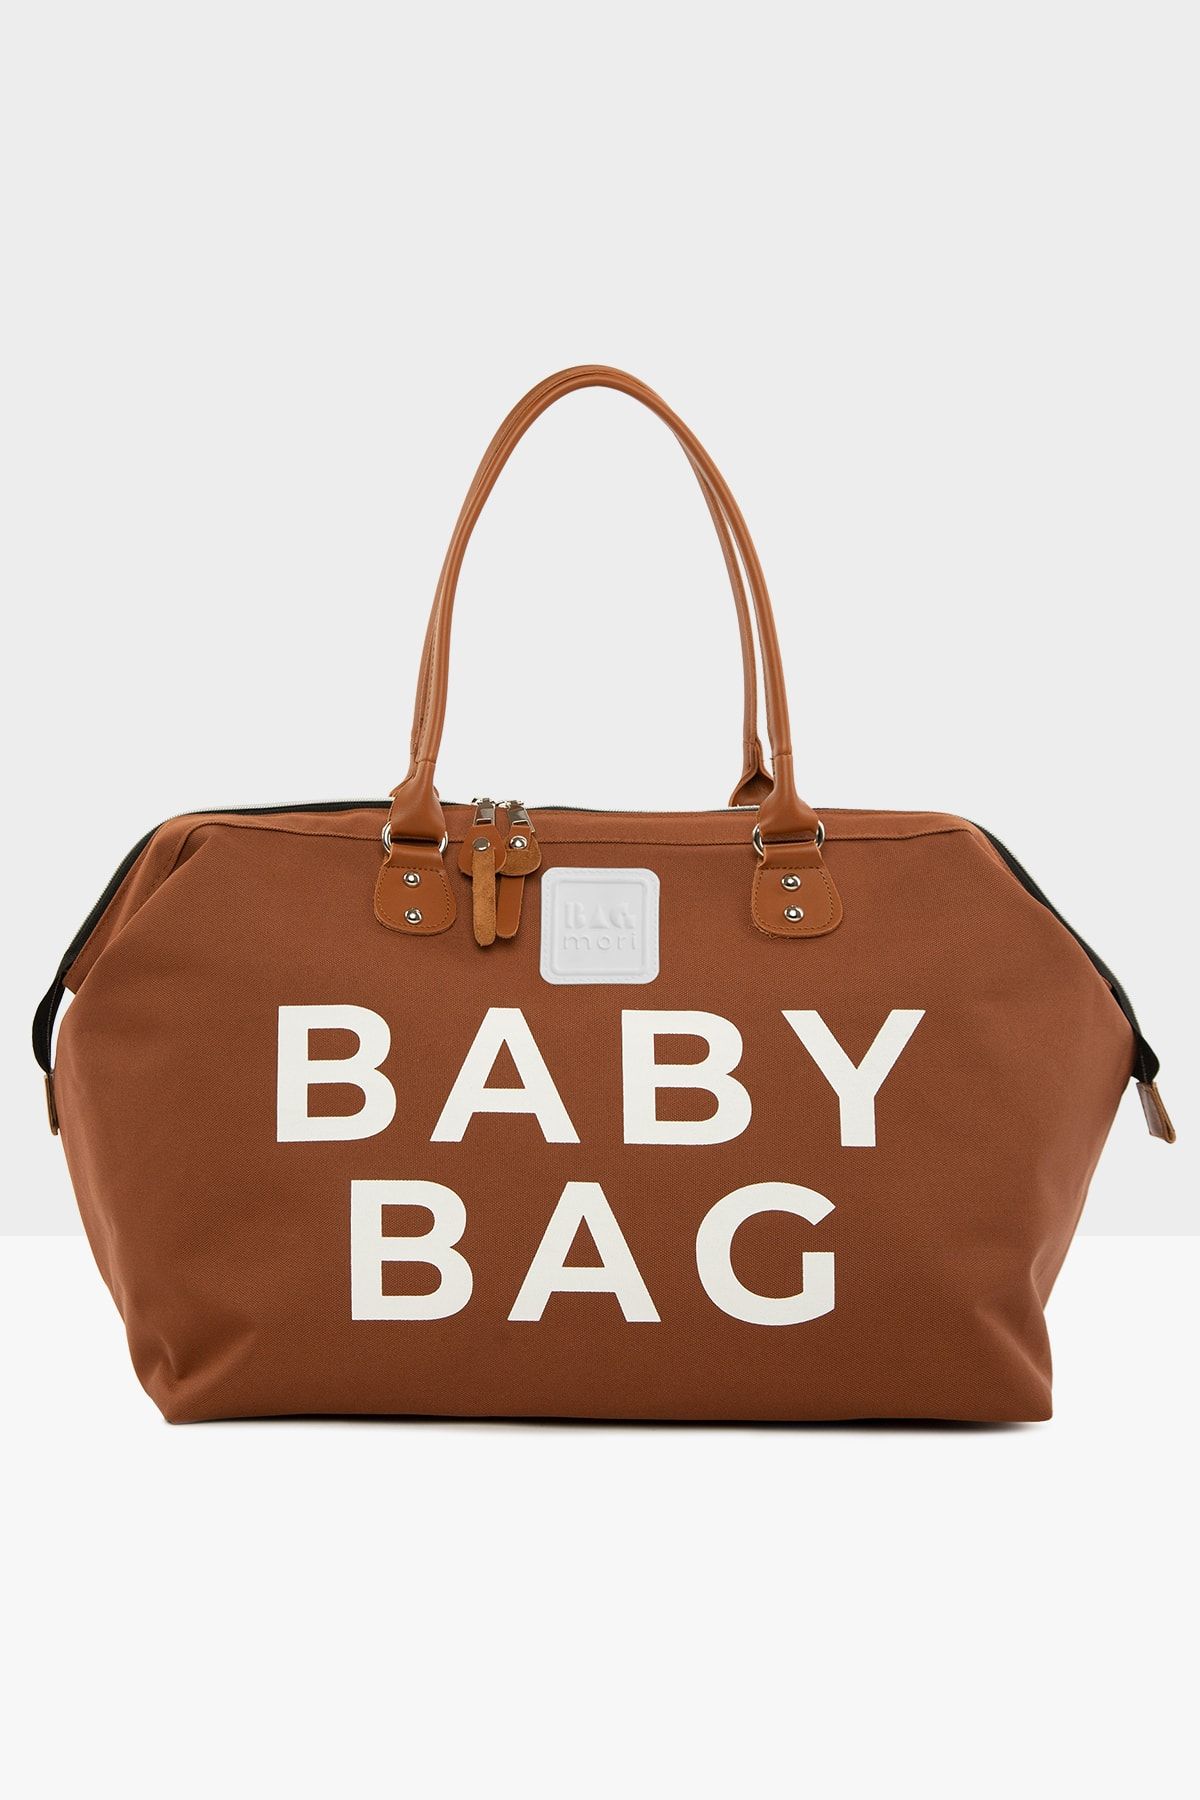 Bagmori Taba Kadın Baby Bag Baskılı Bebek Bakım Çantası M000002169